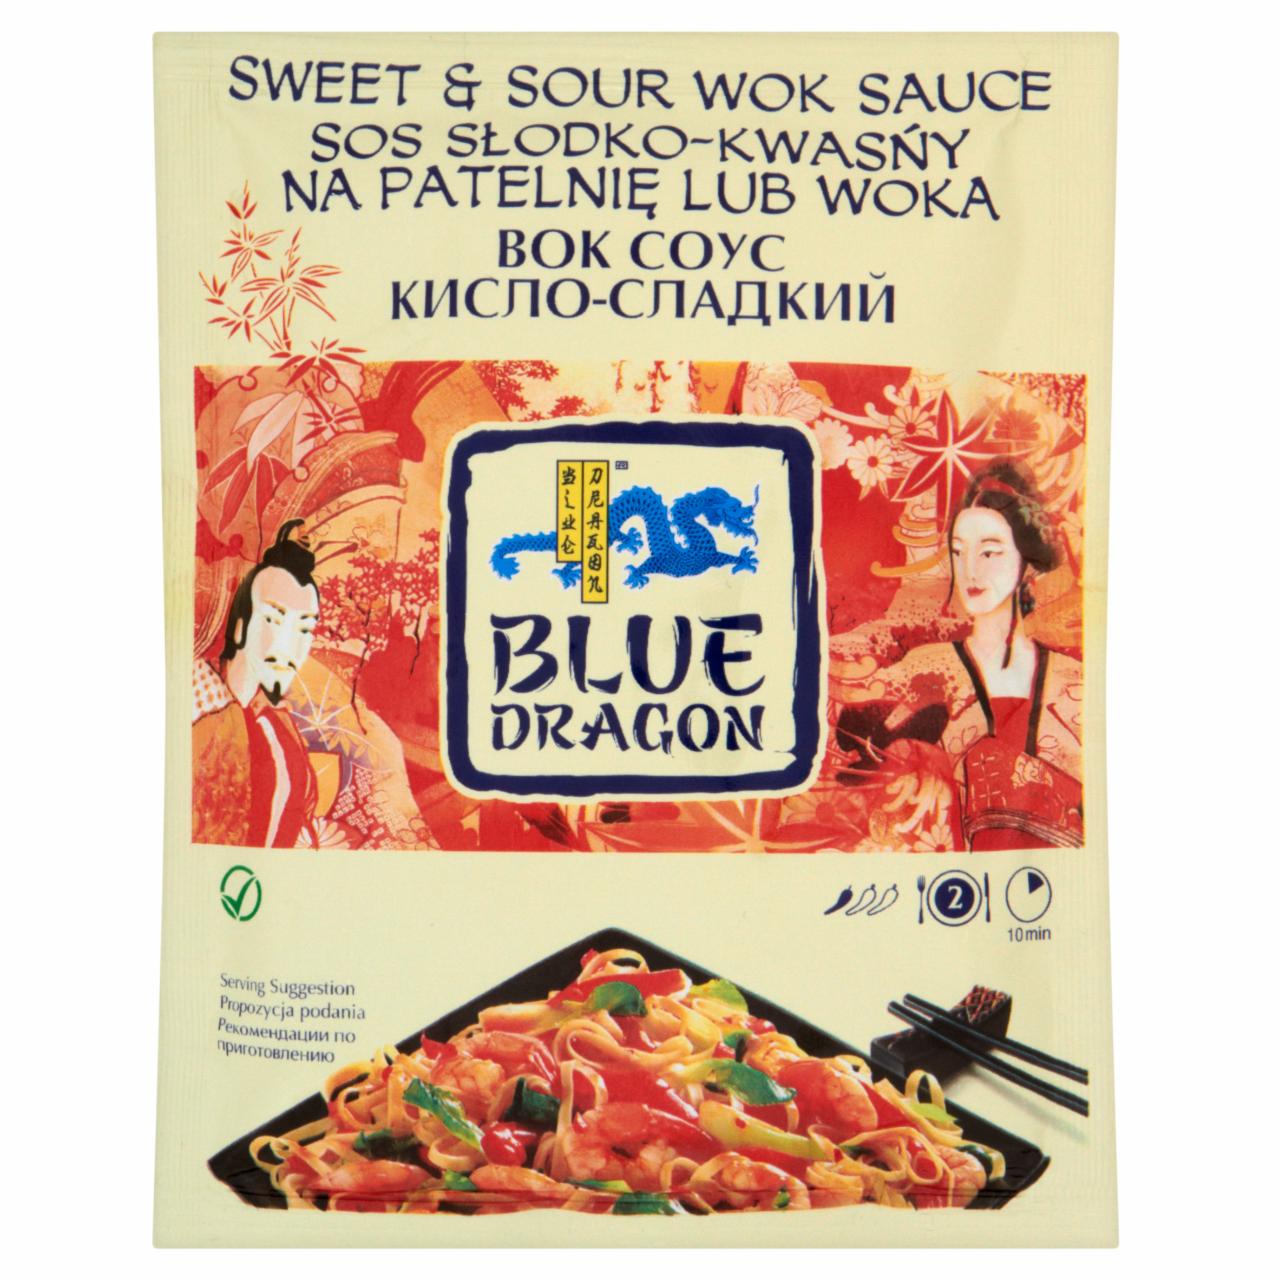 Zdjęcia - Blue Dragon Sos słodko-kwaśny na patelnię lub woka 120 g